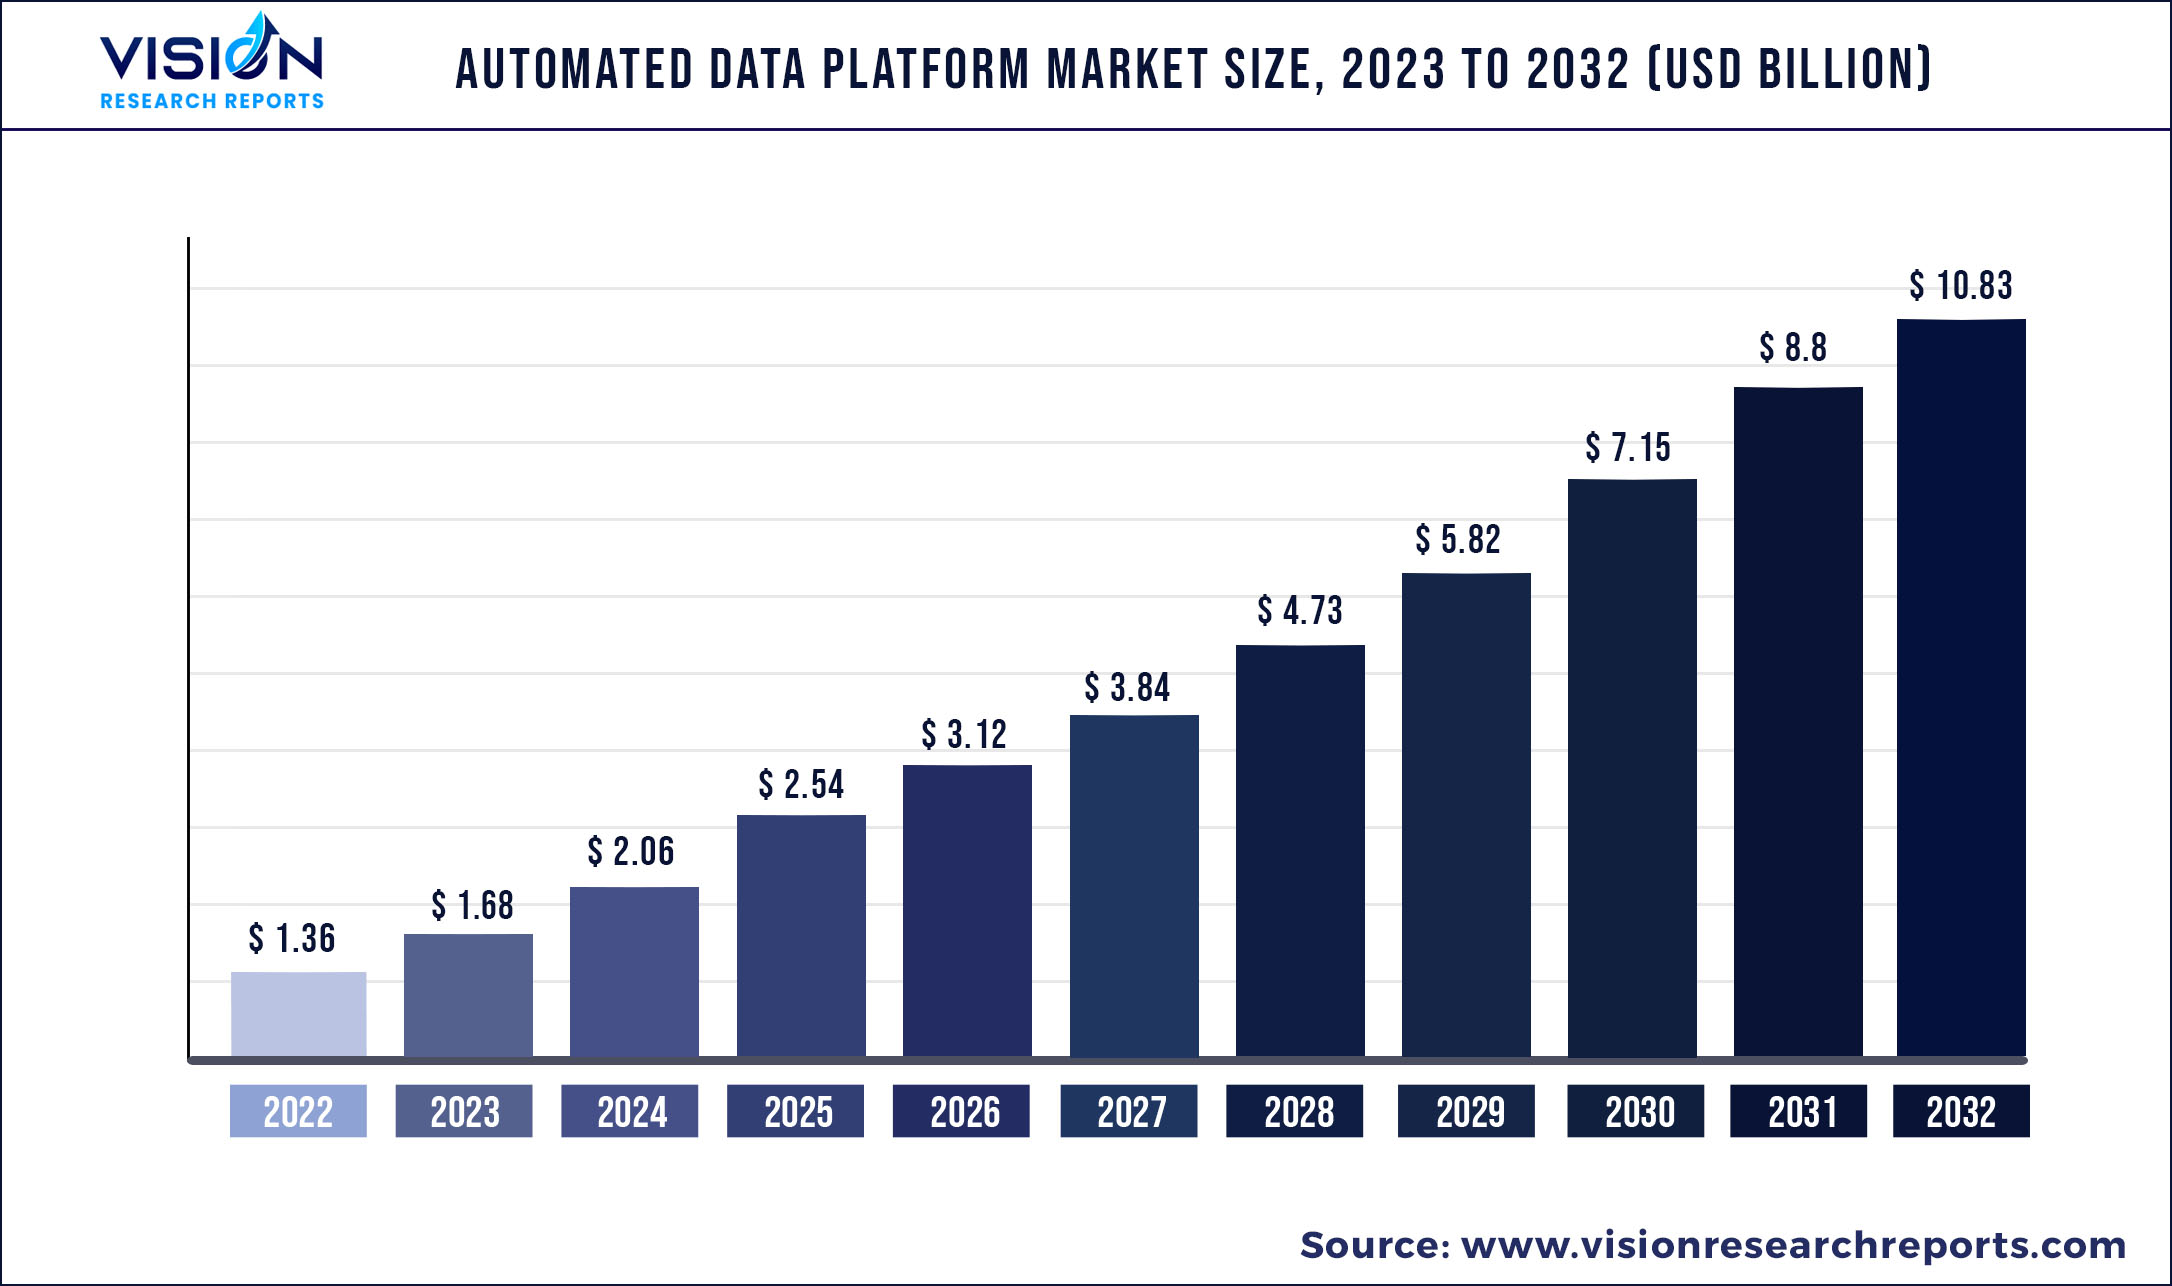 Autonomous Data Platform Market Size 2023 to 2032